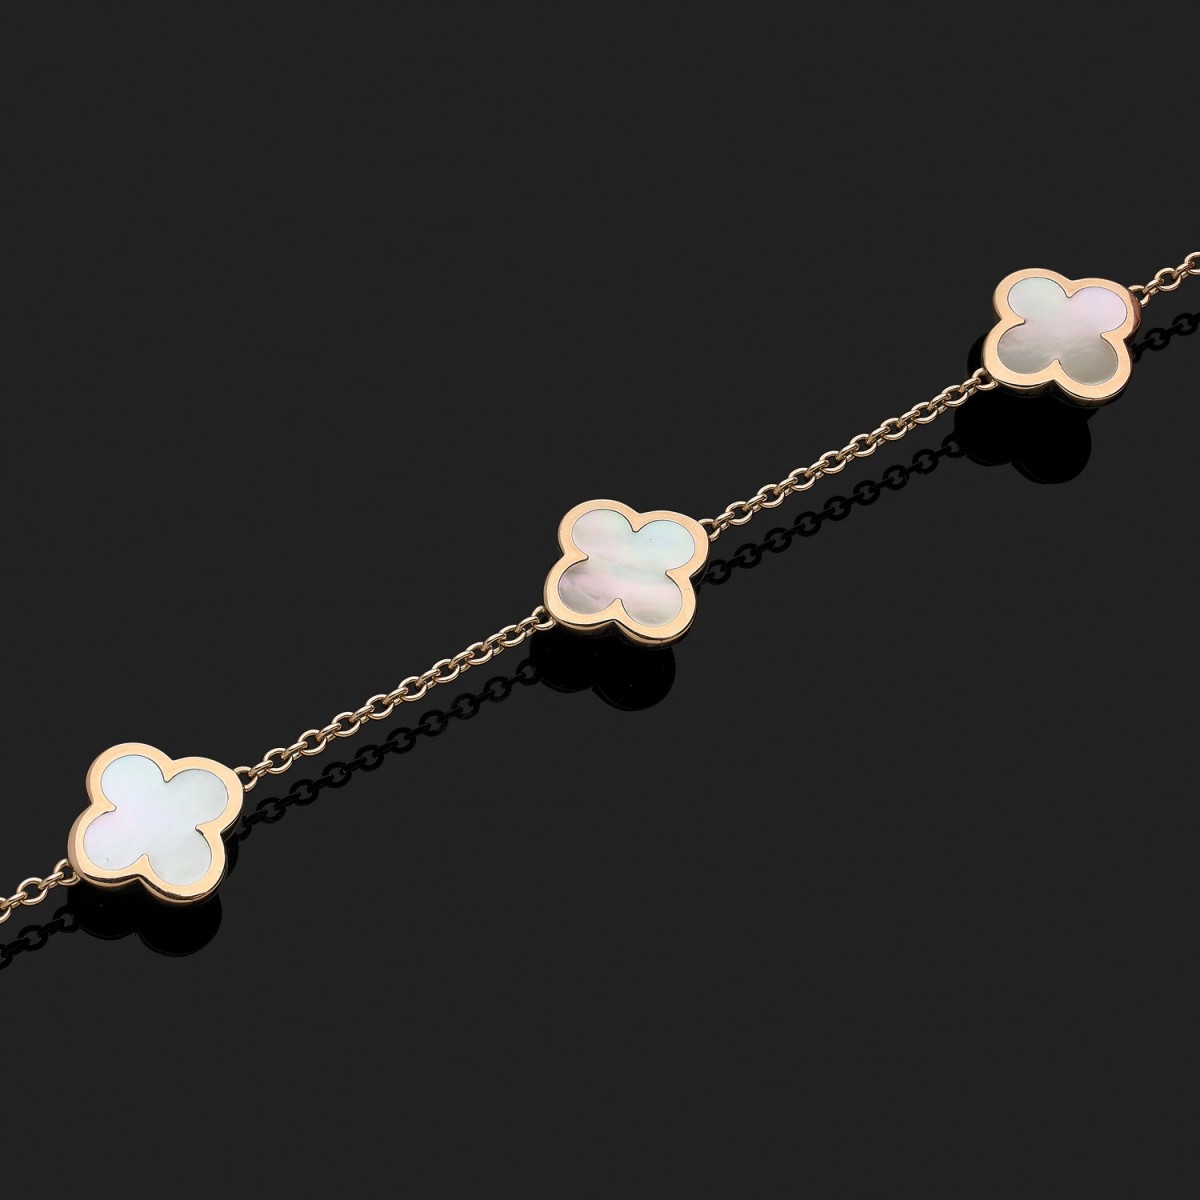 Van Cleef & Arpels Alhambra Bracelet